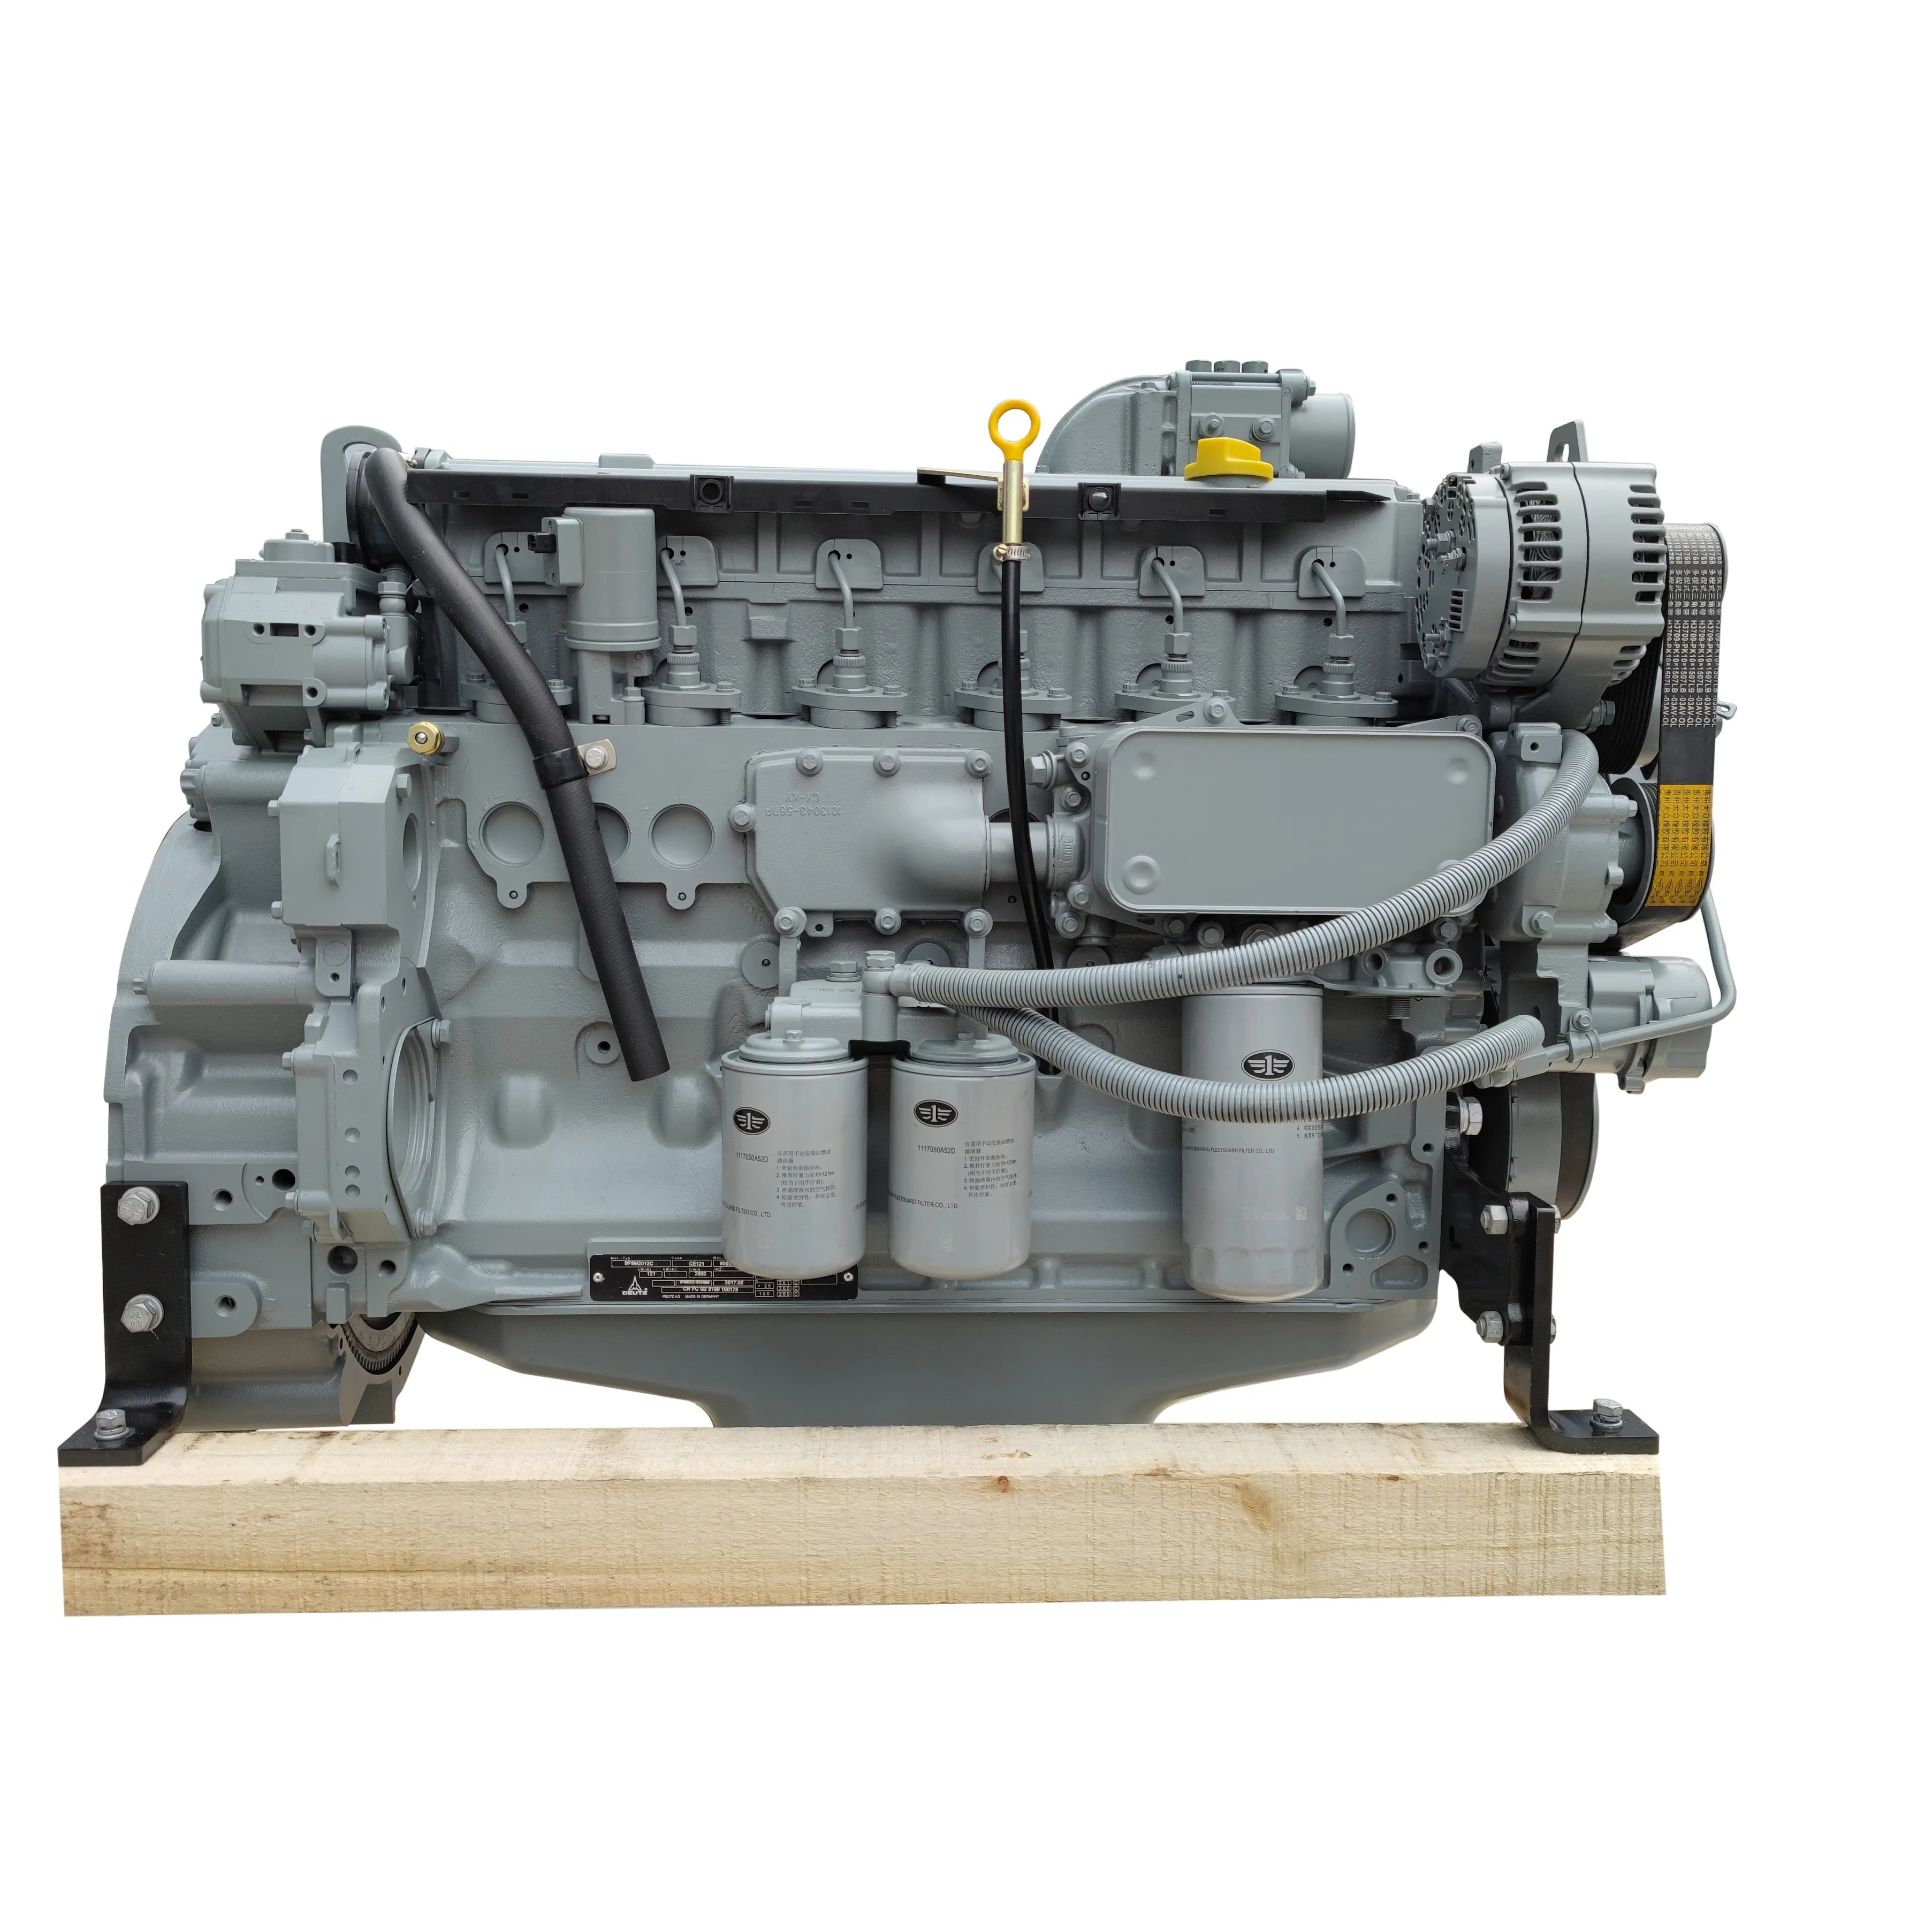 En stock Deutz 100-200Kw motor diésel BF6M2012C usado para máquinas de construcción